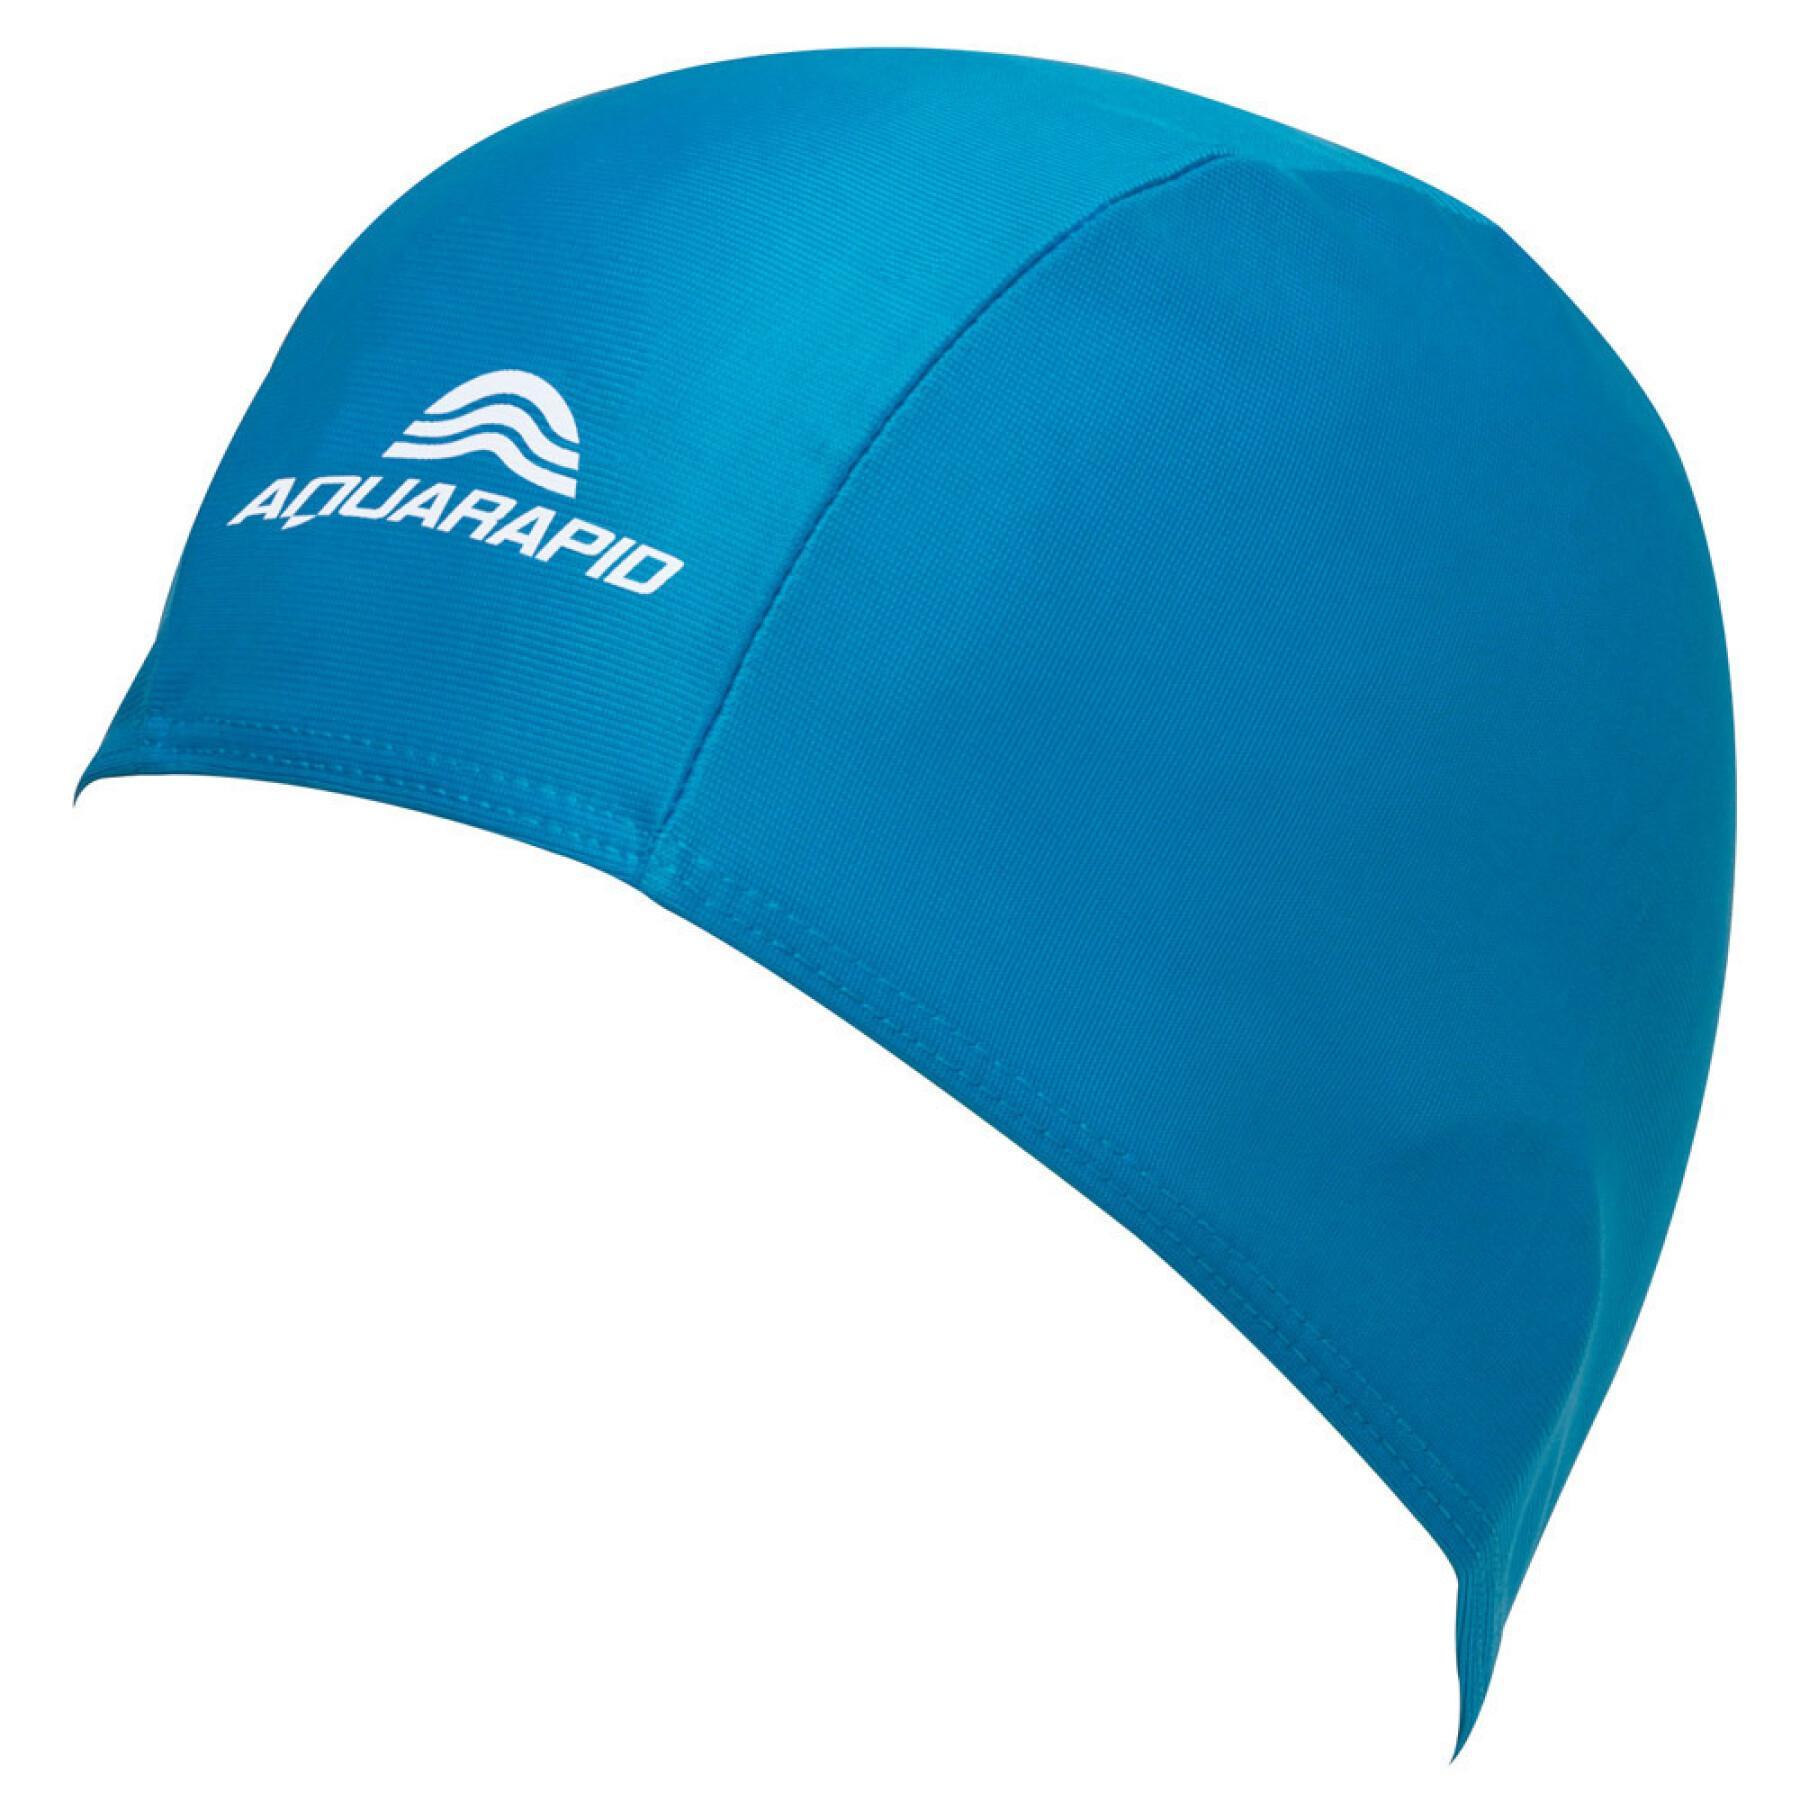 Aquarapid Basic knitted swim cap